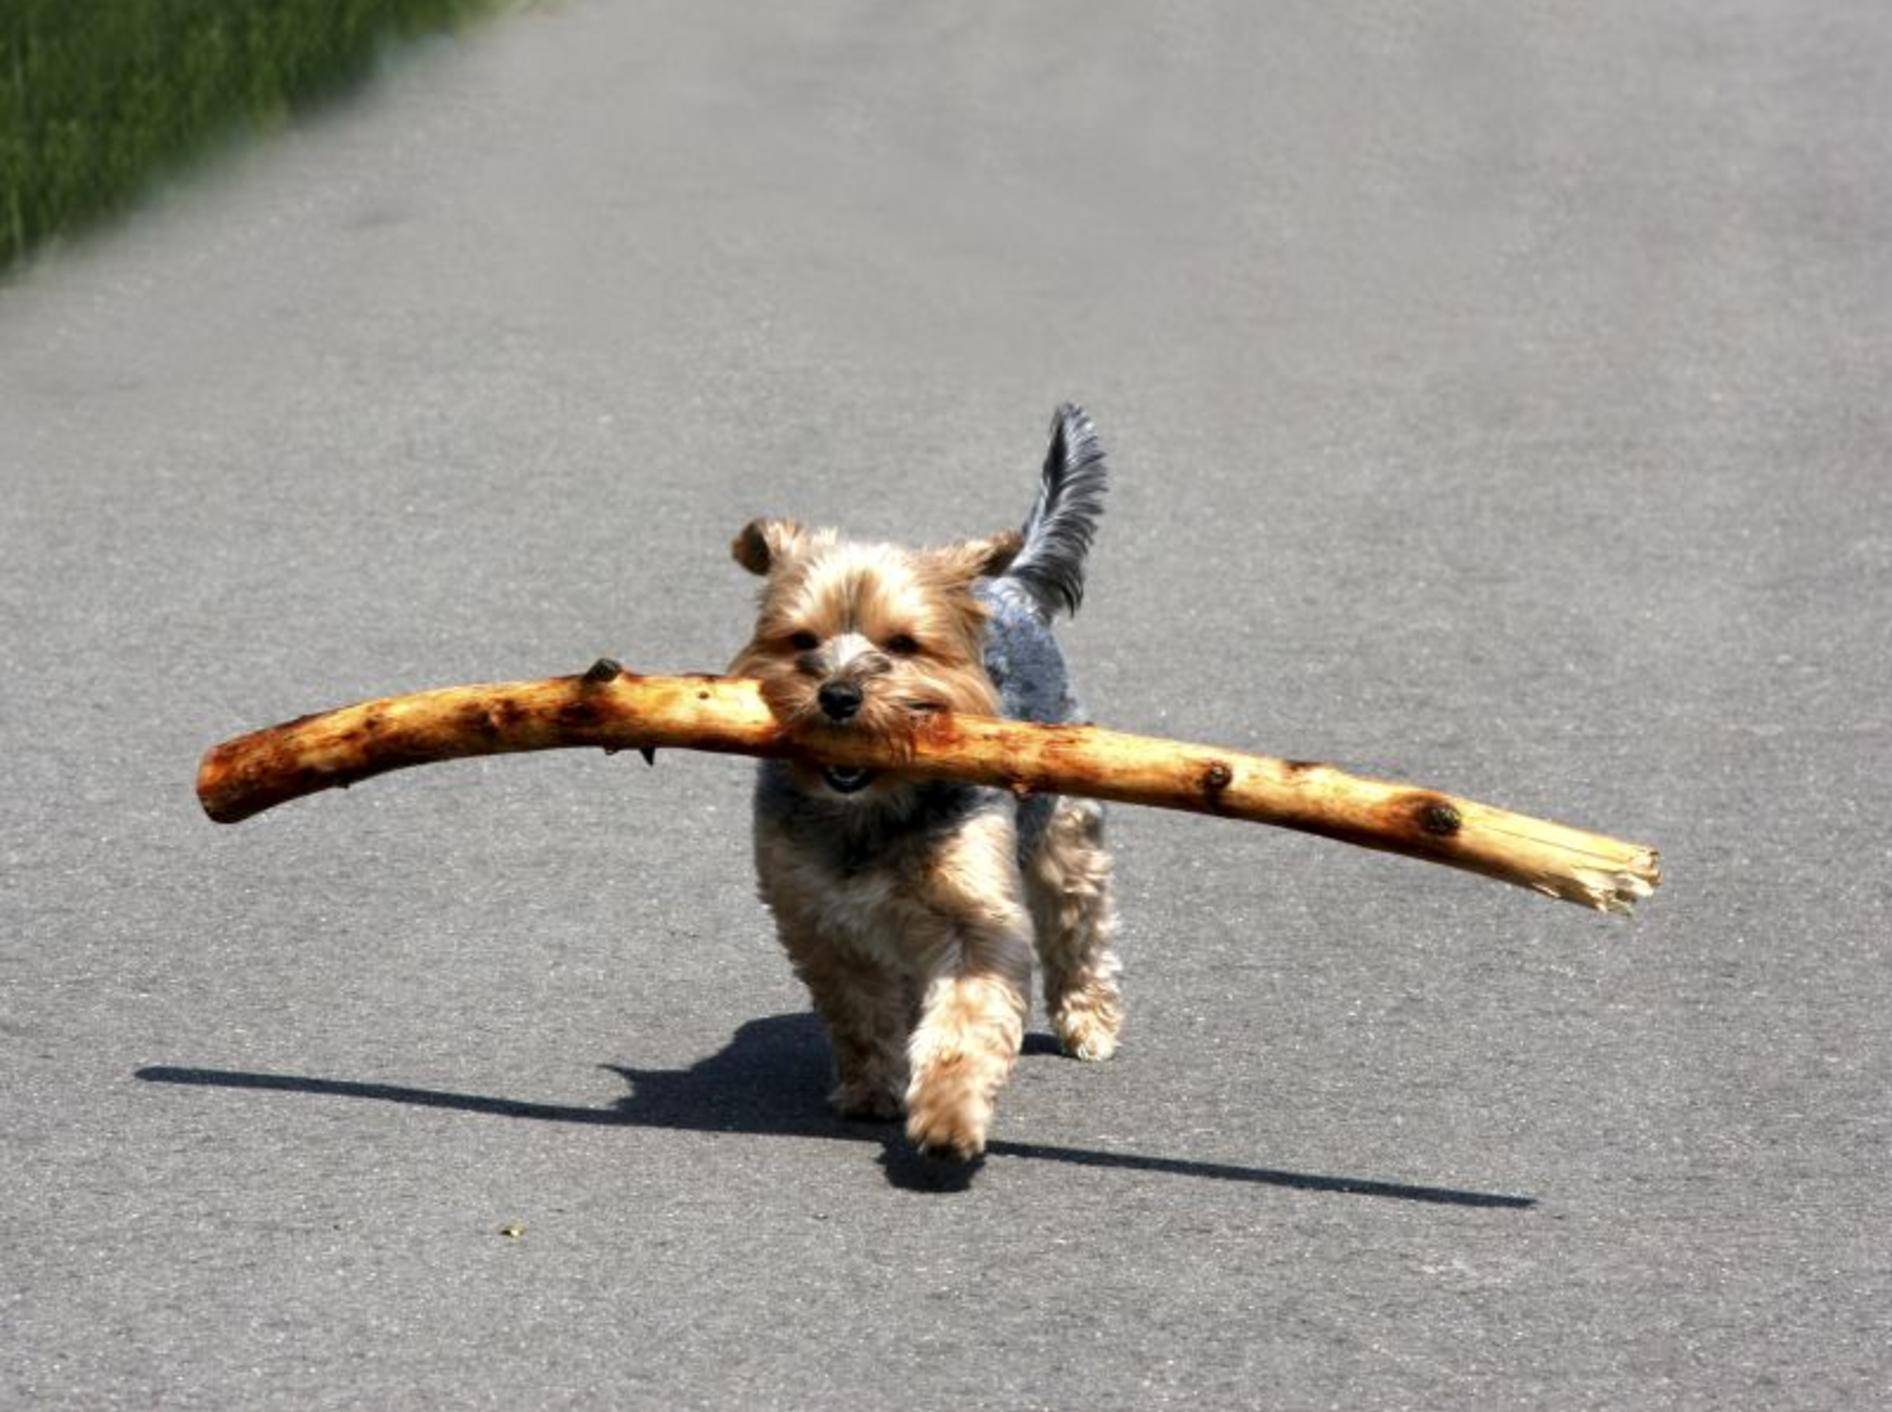 Der kluge, muntere Yorkshire Terrier spielt gern und lernt schnell – Bild: Shutterstock / Peter38